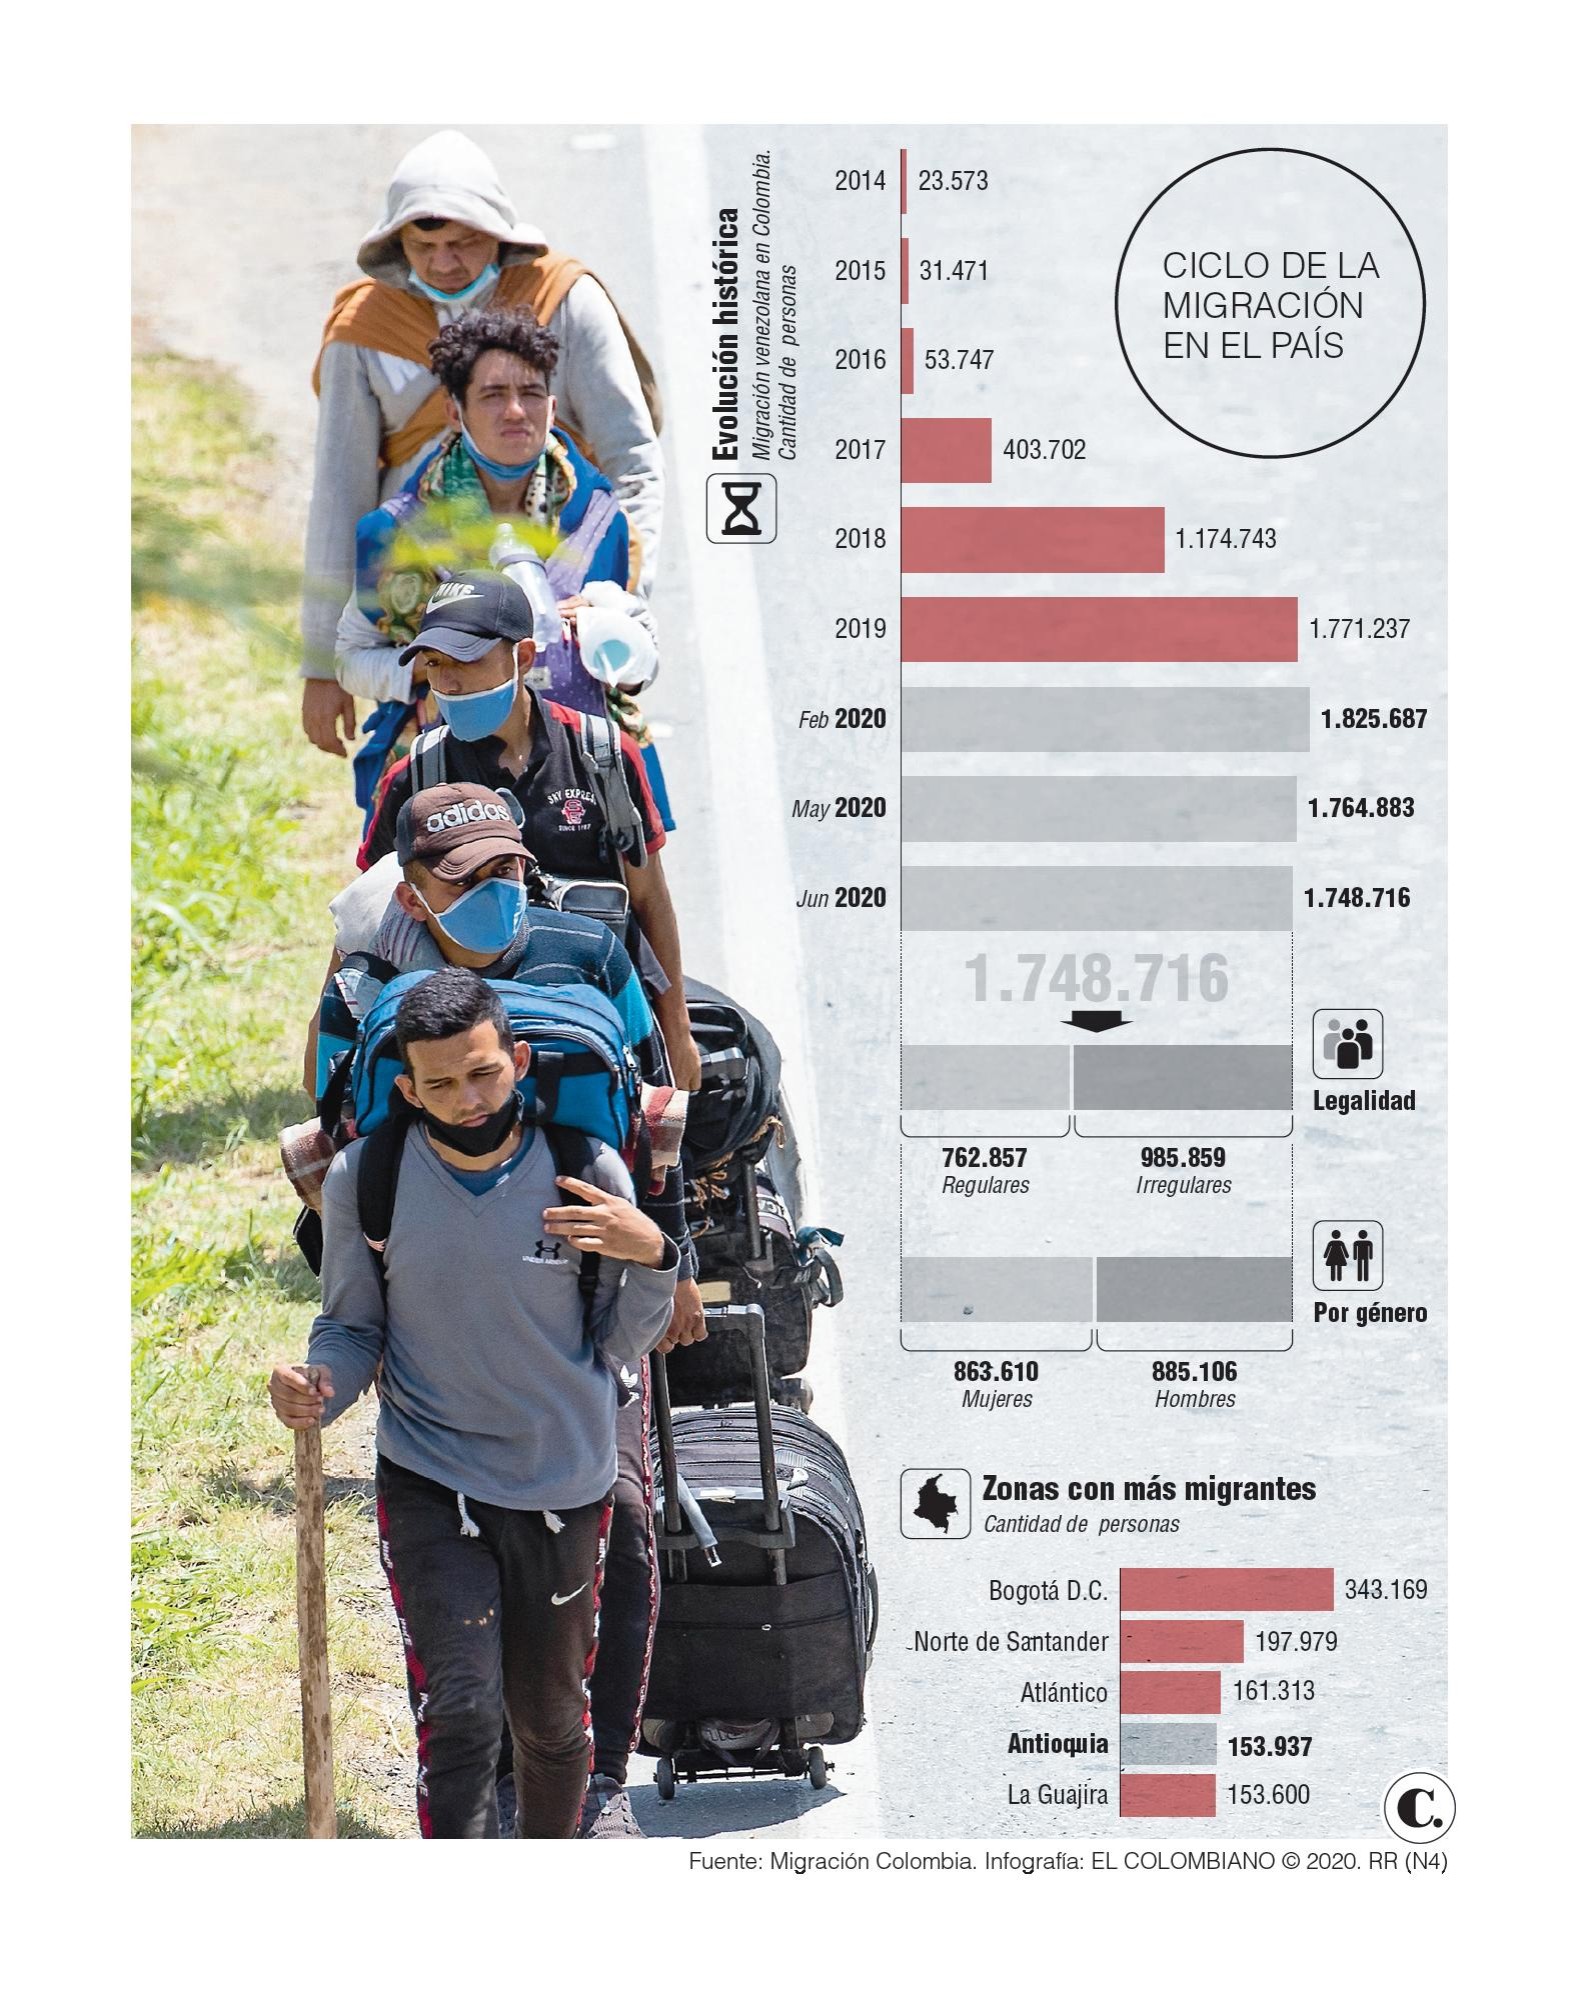 Migración venezolana, a la baja por la pandemia